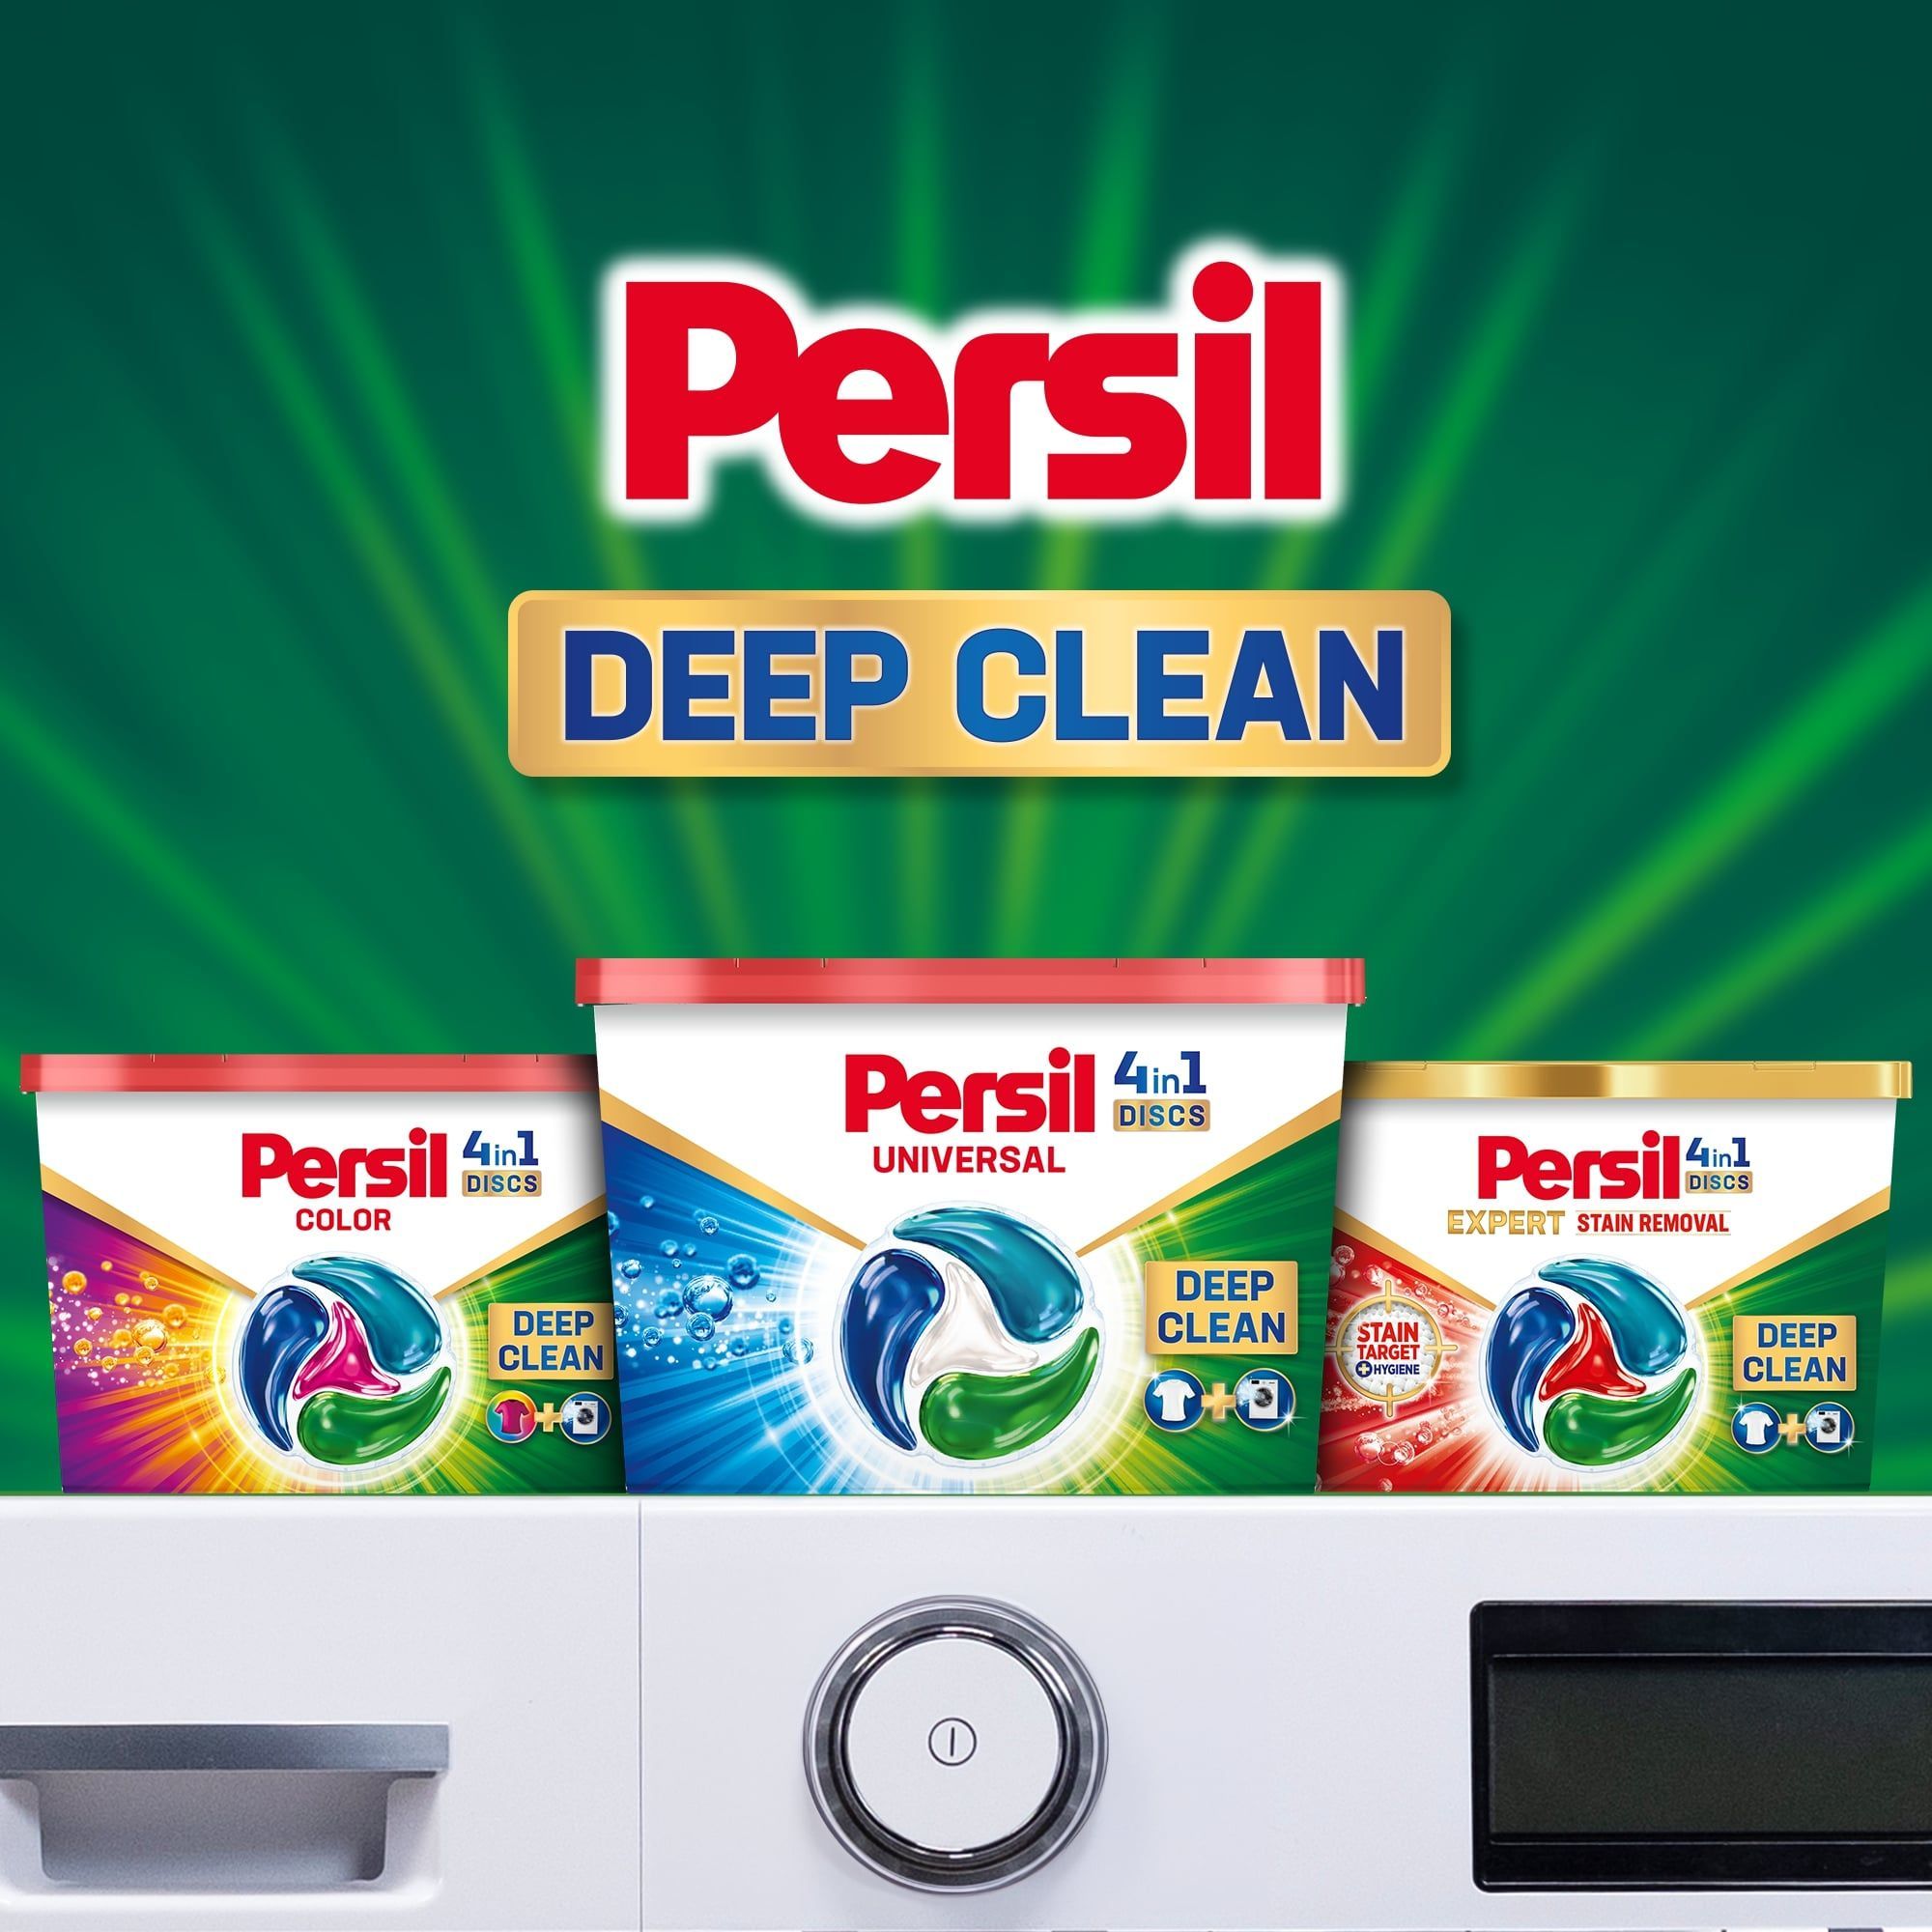 Диски для прання Persil Deep Cleen Universal 4 in 1 Discs 54 шт. - фото 6